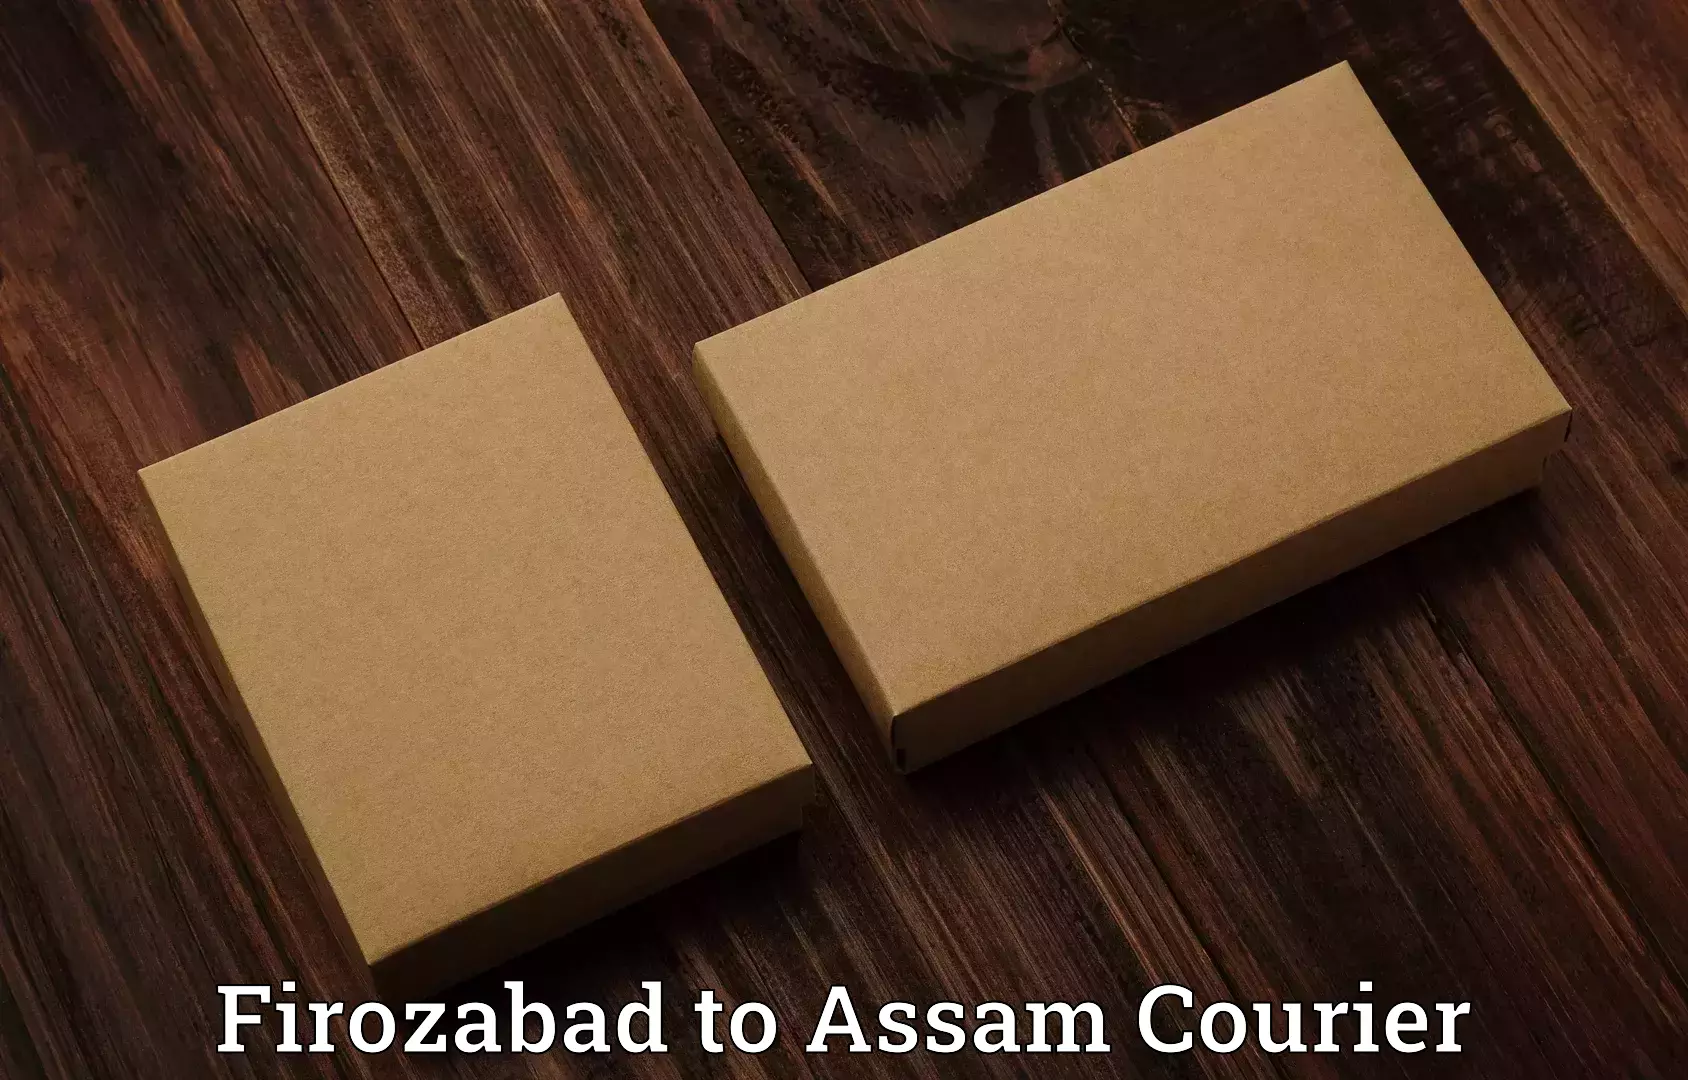 Luggage shipment tracking Firozabad to Karbi Anglong